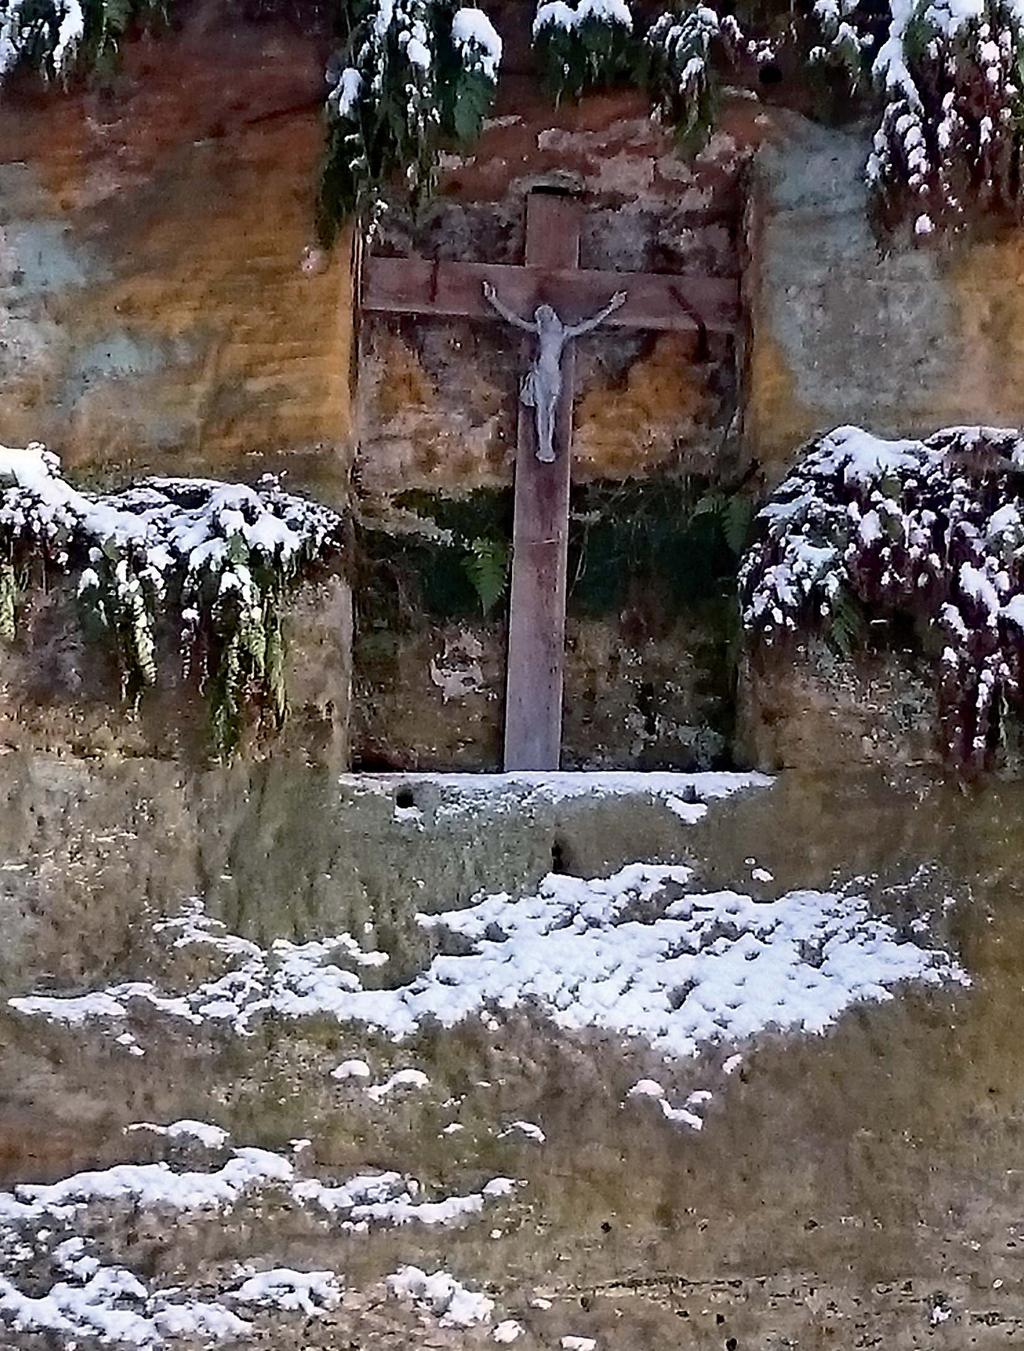 Kříž u Kamenného stolu je významný tím, že na pískovcové skále stejného názvu byla na několik dní vystavena skleněná rakev s tělem Melánie Bělohříbkové, dcery J.Bělohříbka.